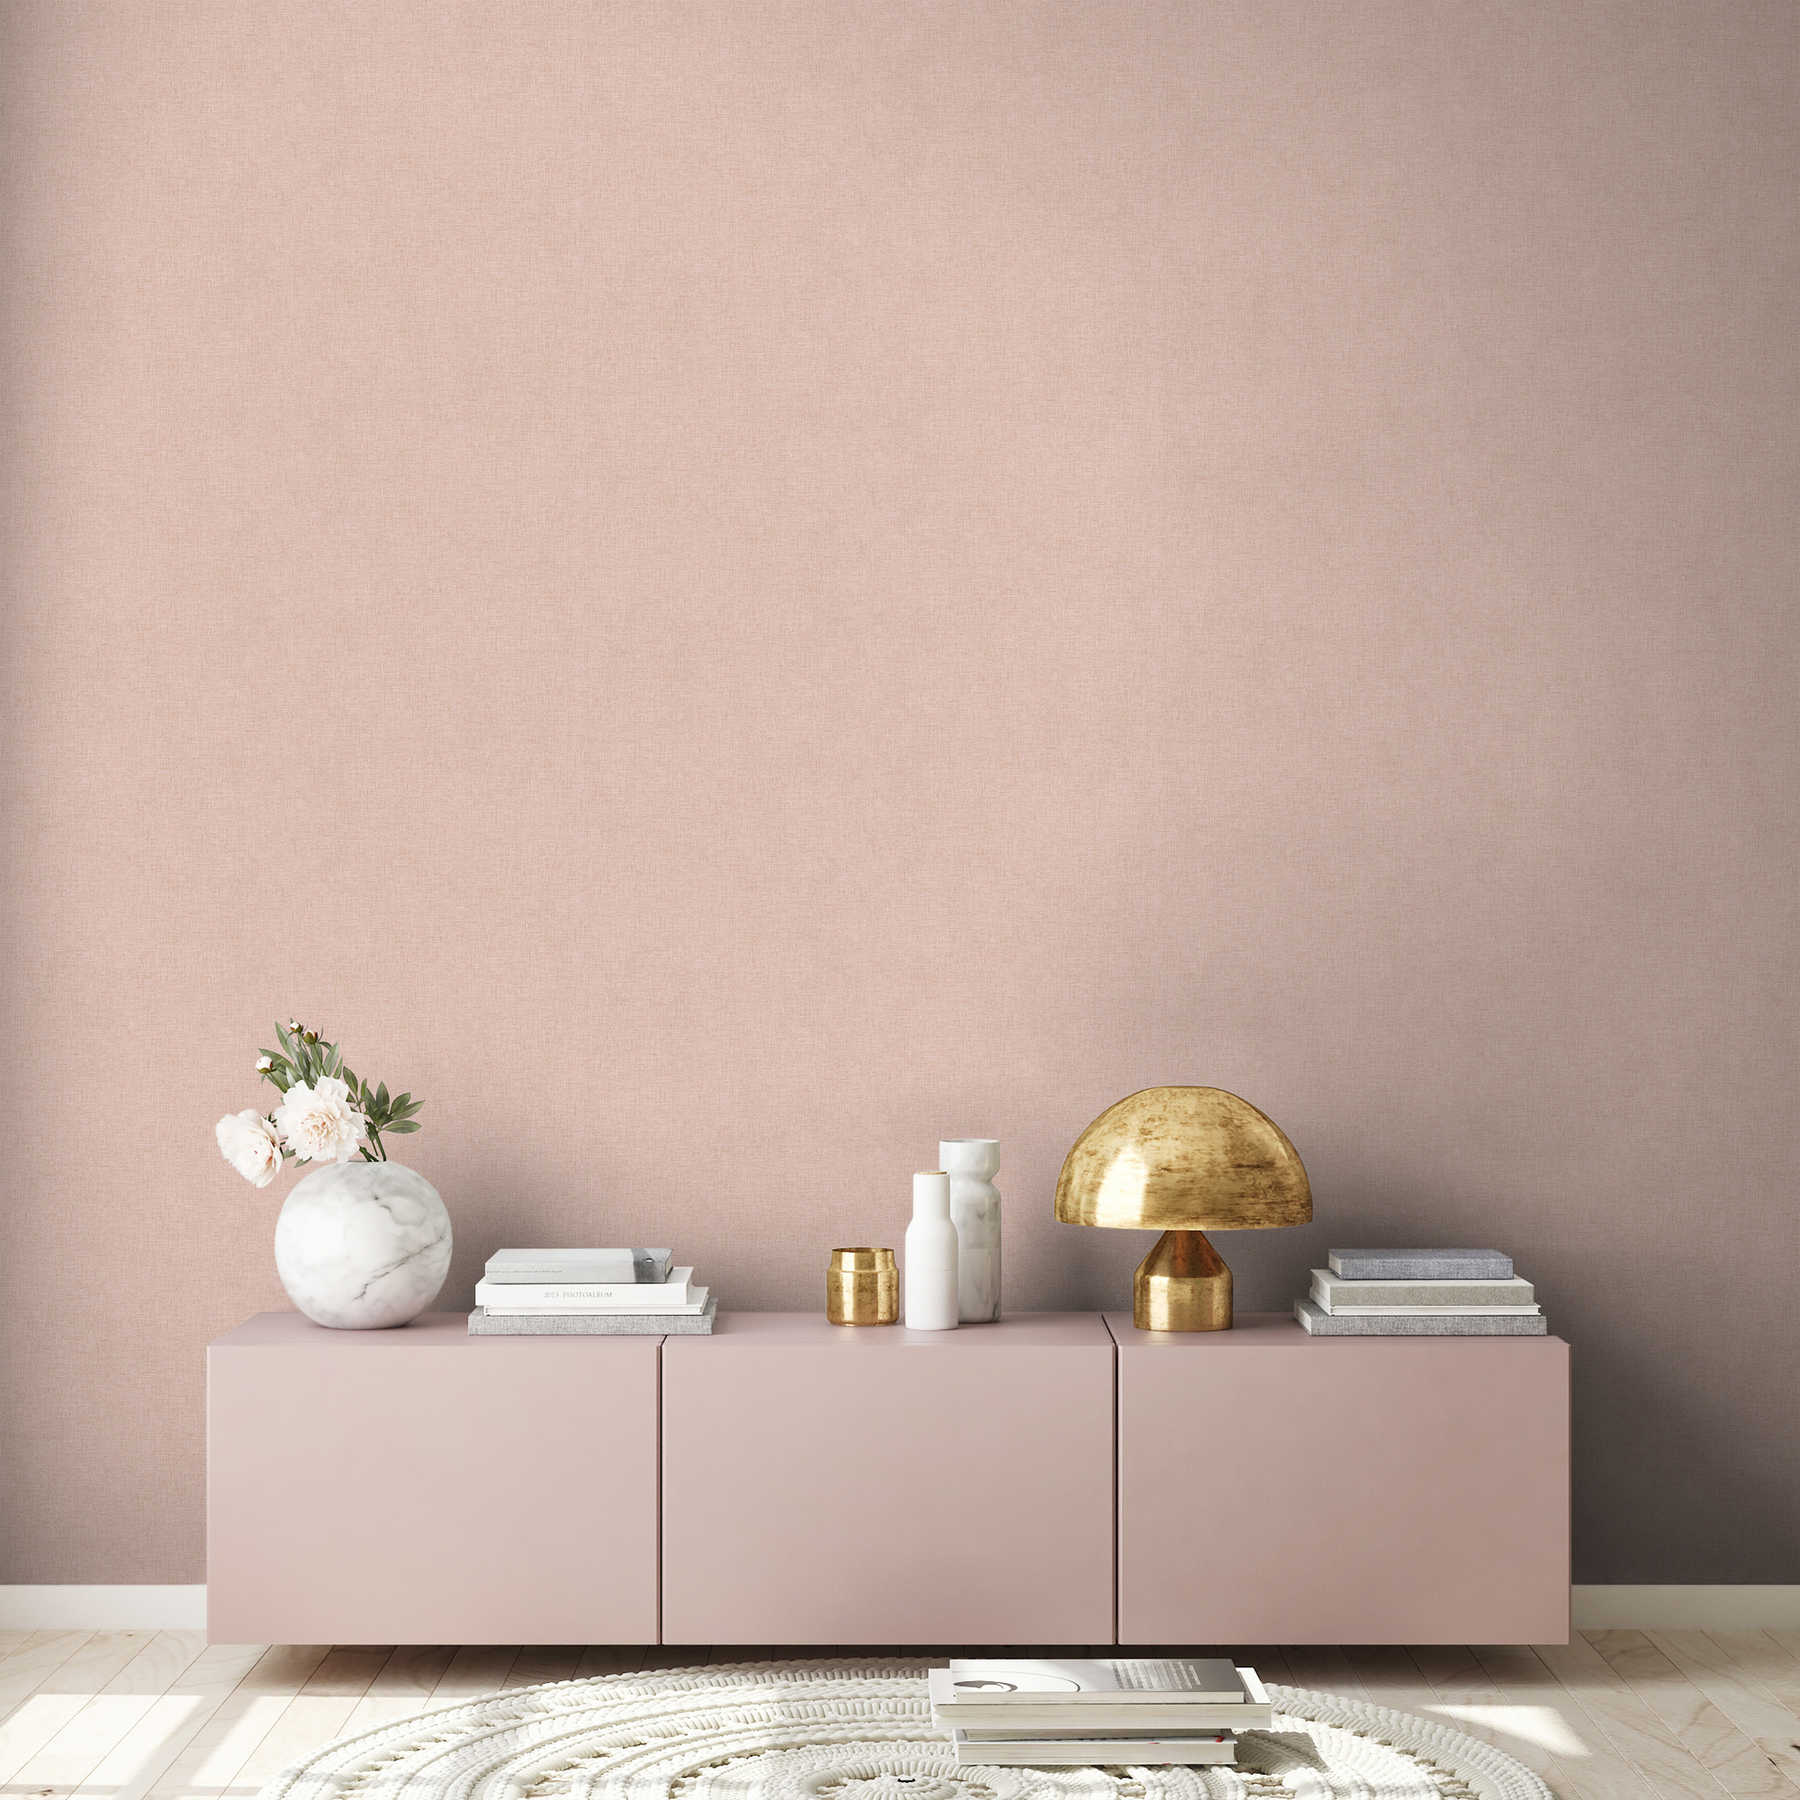             Papier peint uni avec aspect lin discret - rose
        